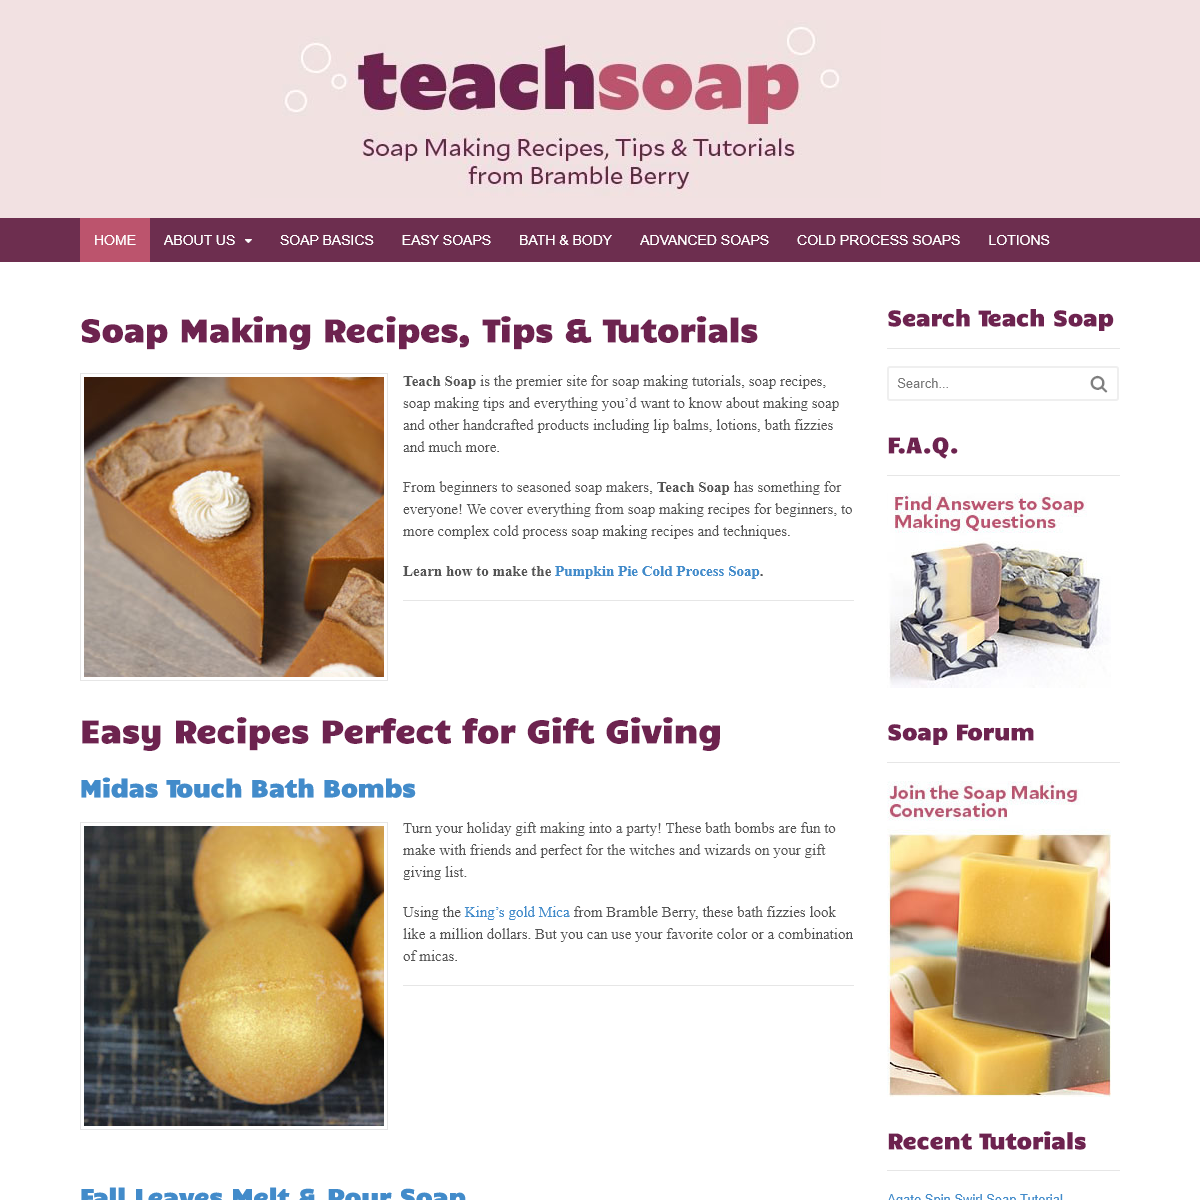 Soap Making Recipes, Tips & Tutorials - Teach Soap